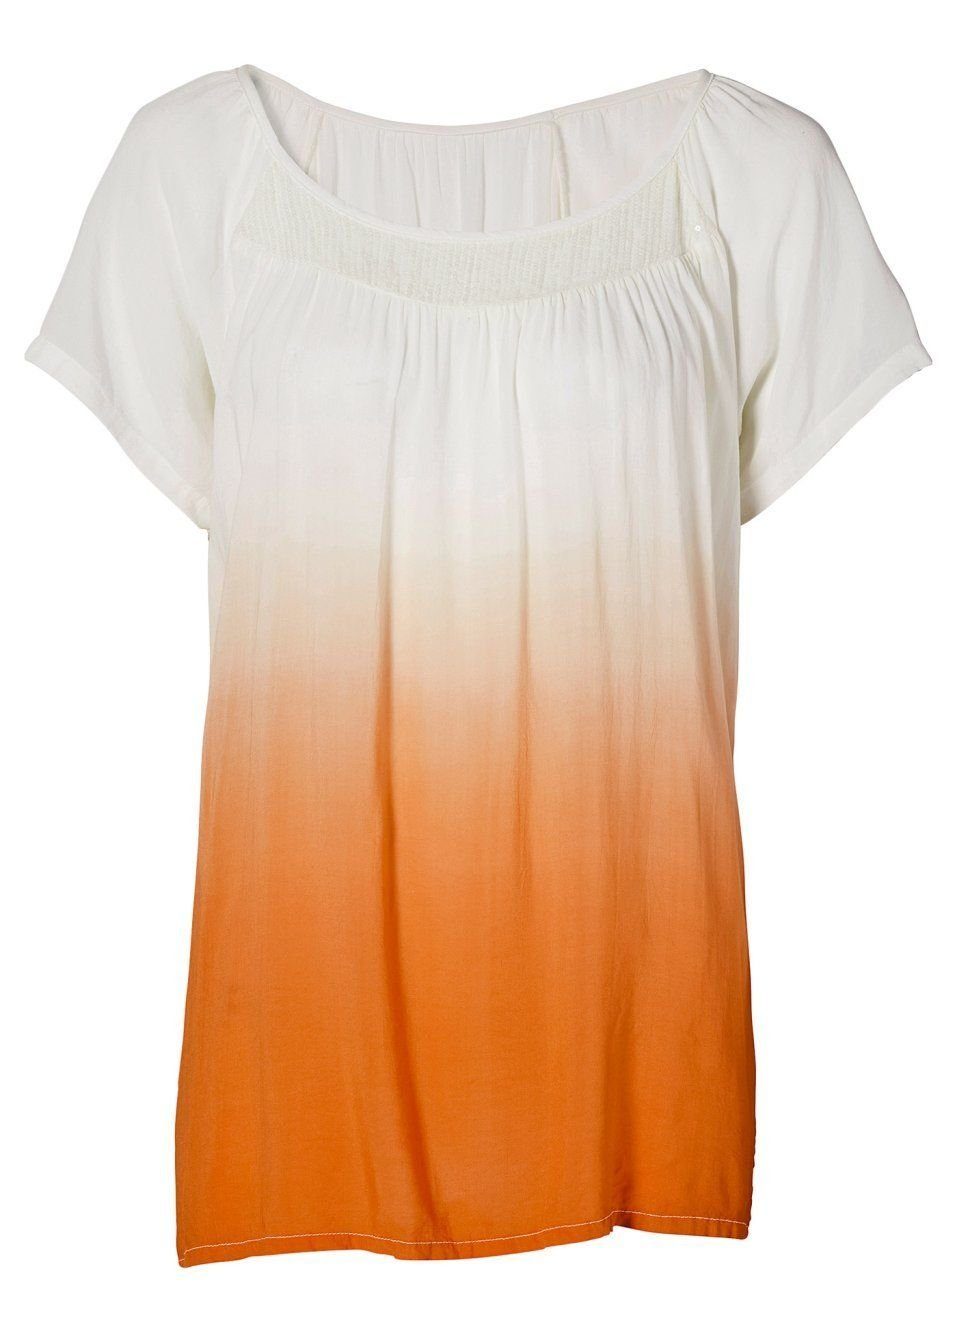 Neue Artikel dieser Saison! YESET Tunika Tunika kurzarm orange 928589 Farbverlauf Pailletten Shirt Bluse ecru